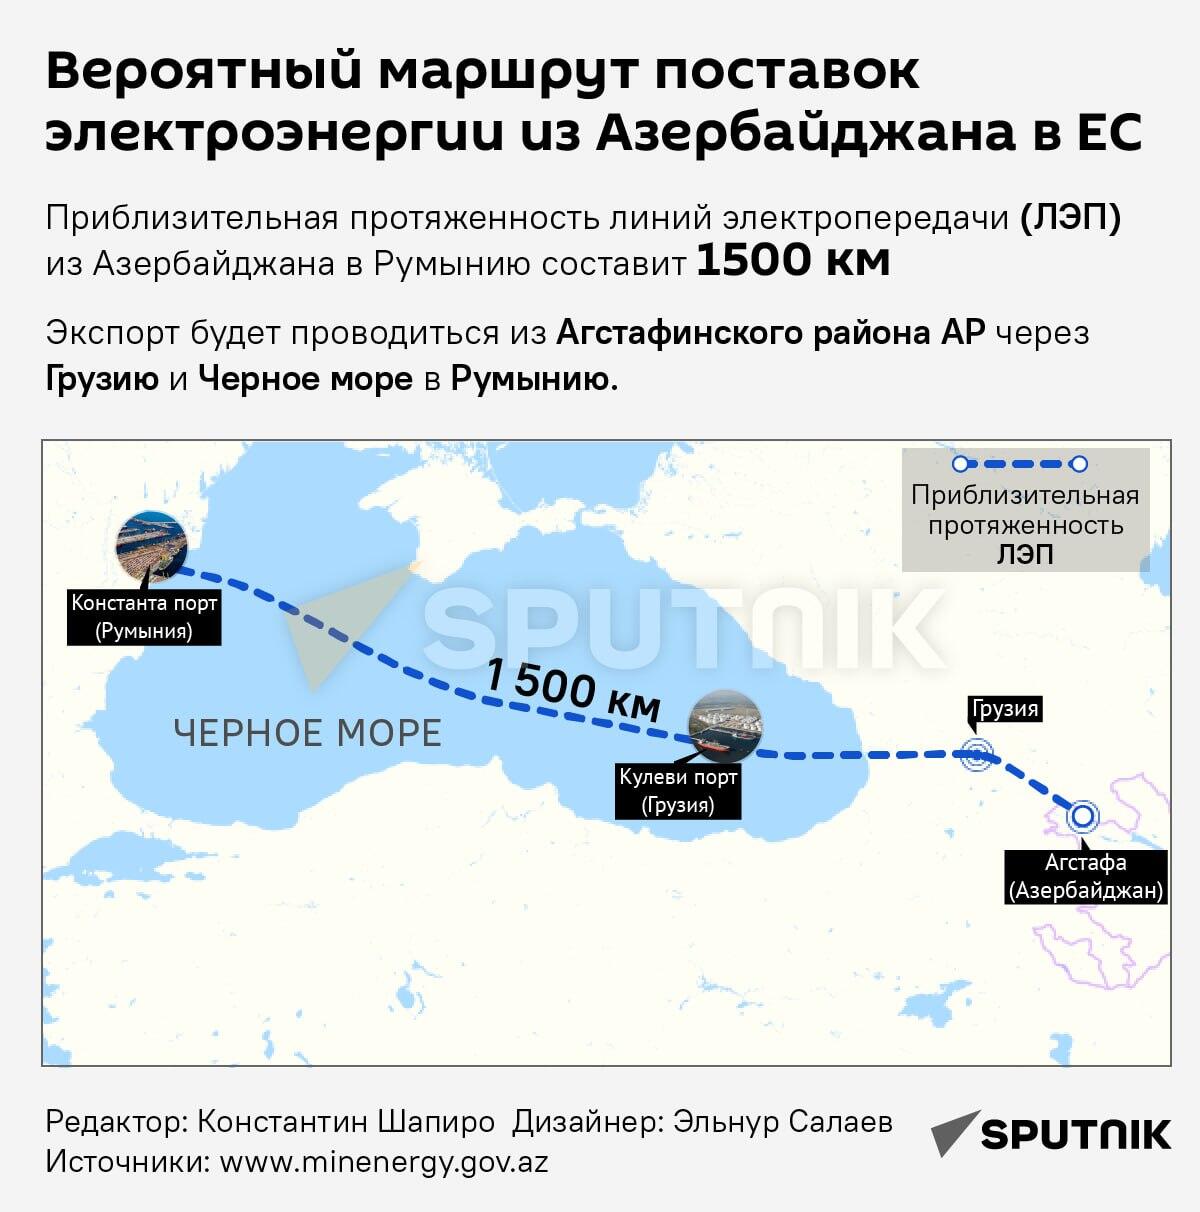 Инфографика: Вероятный маршрут поставок электроэнергии из Азербайджана в ЕС - Sputnik Азербайджан